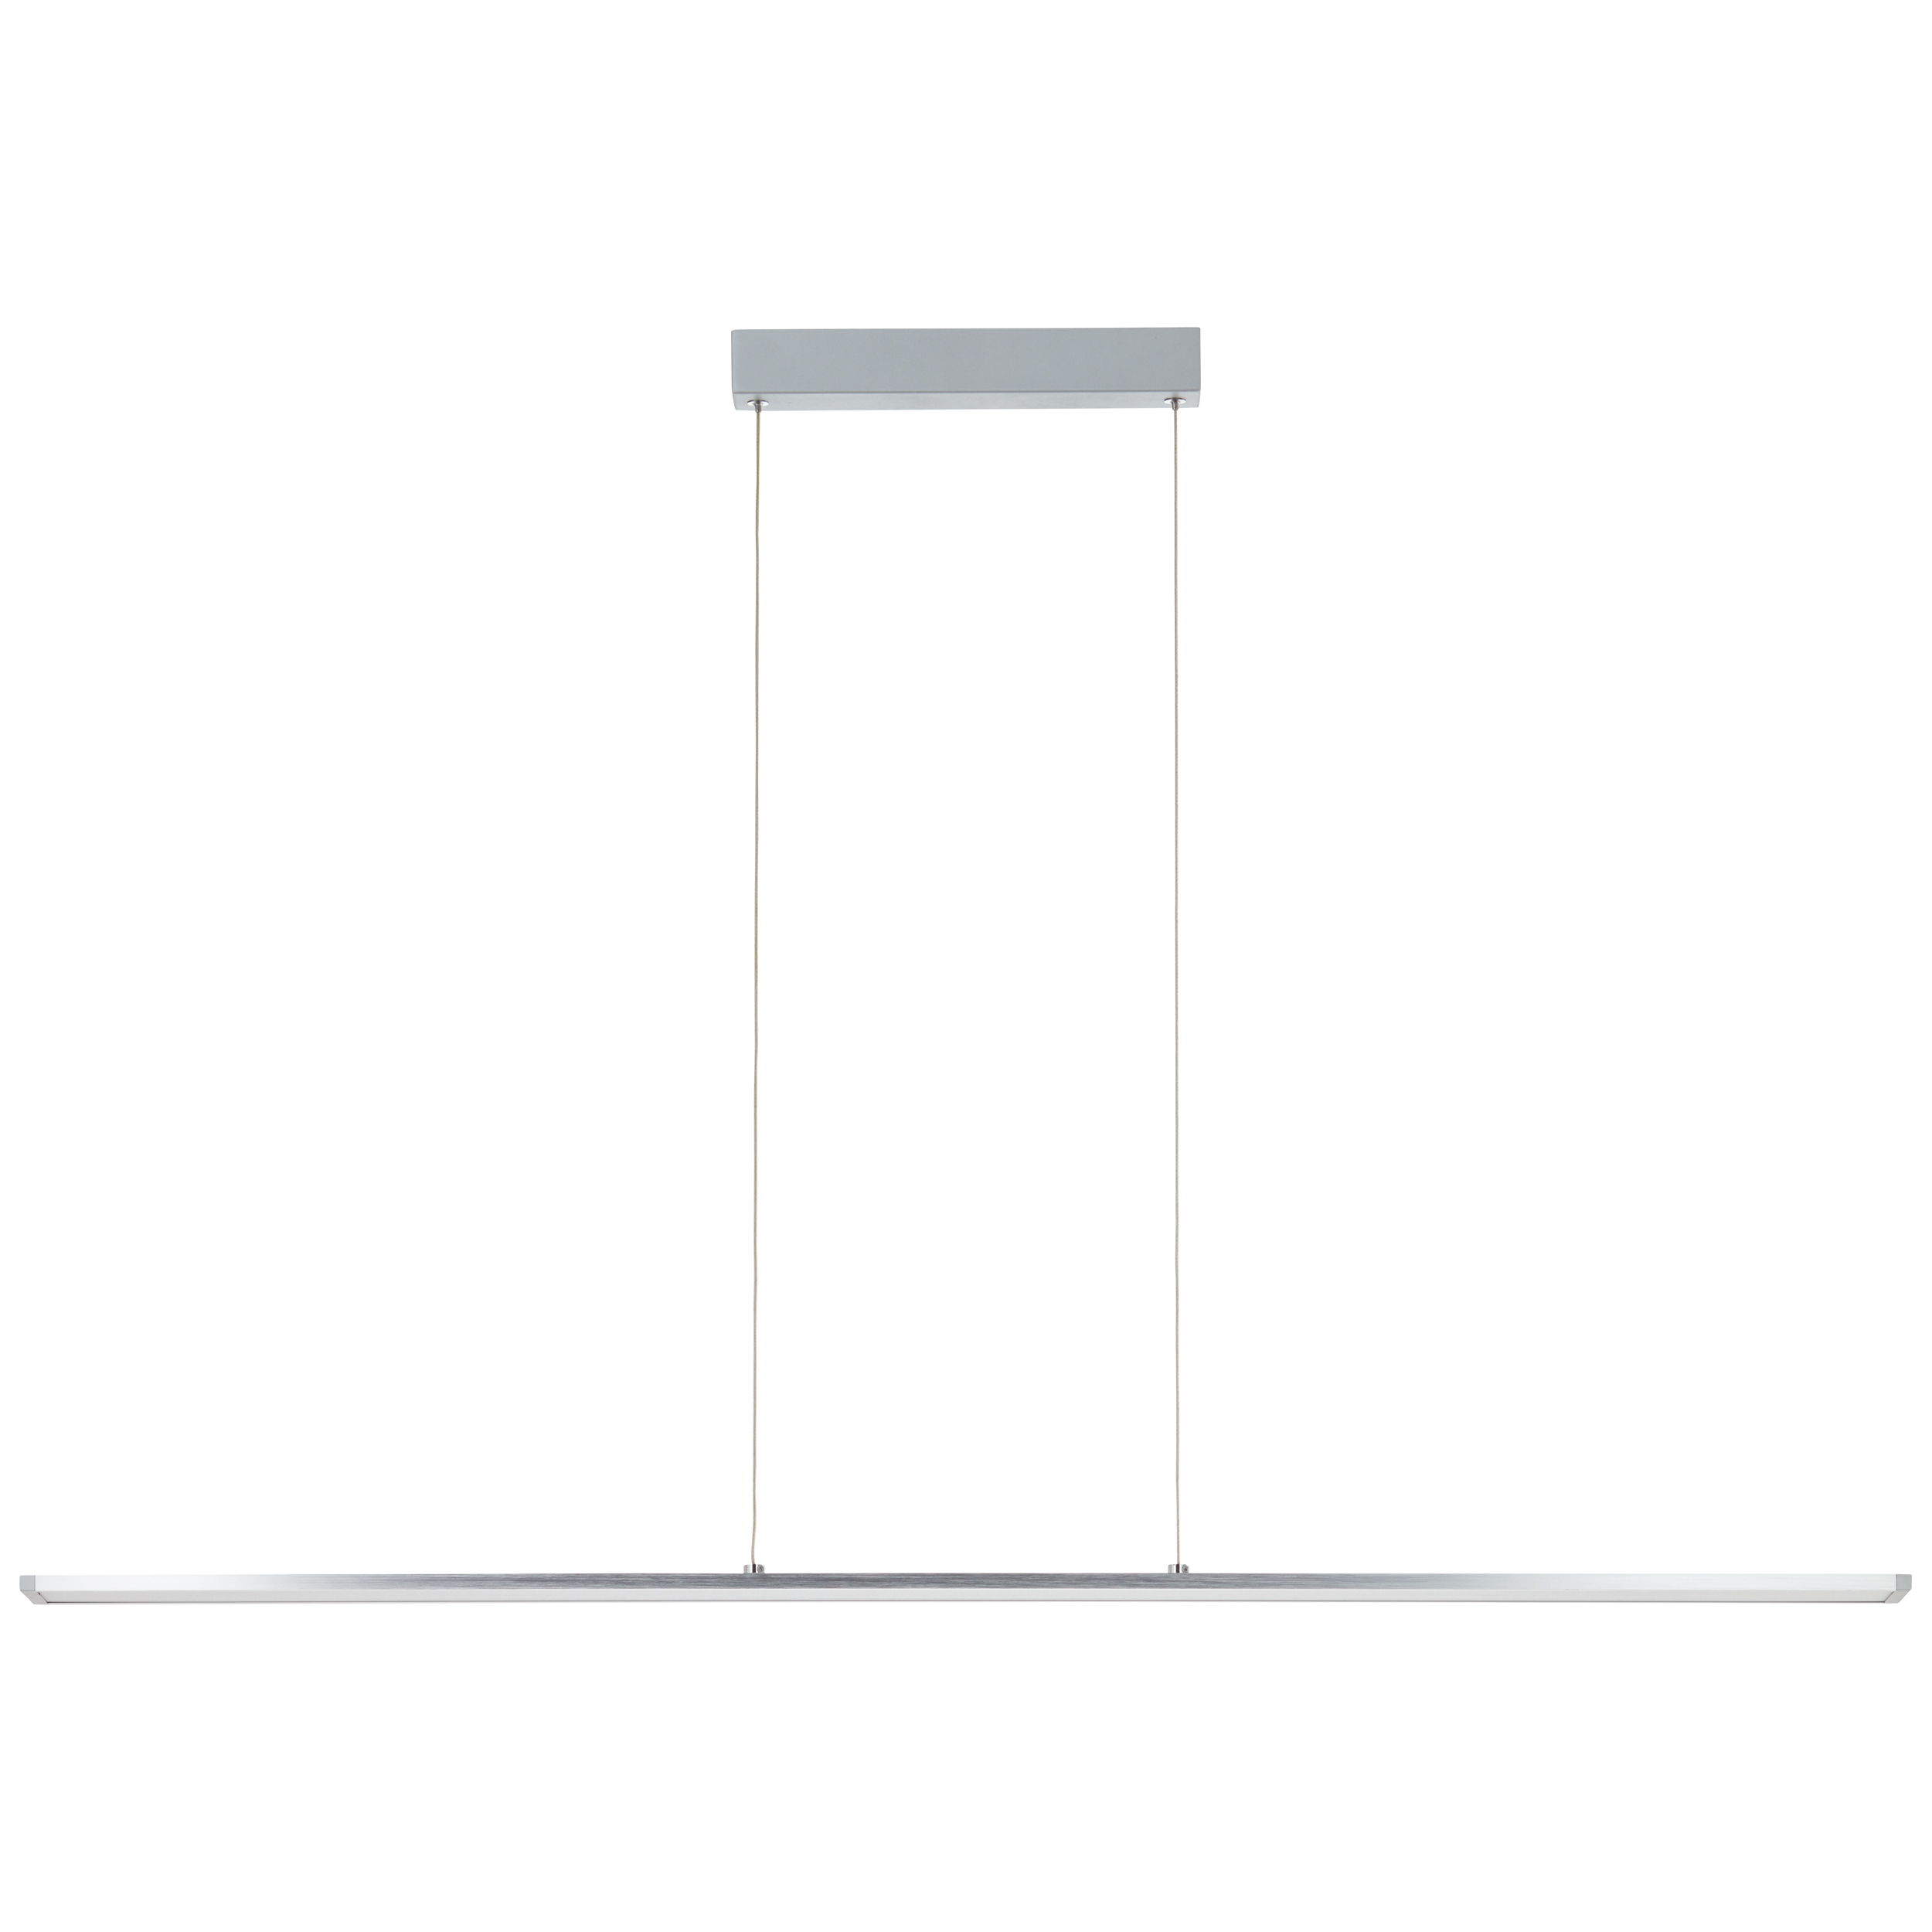 Entrance LED Pendelleuchte Paneel 120cm alu/weiß easyDim | G97028/21